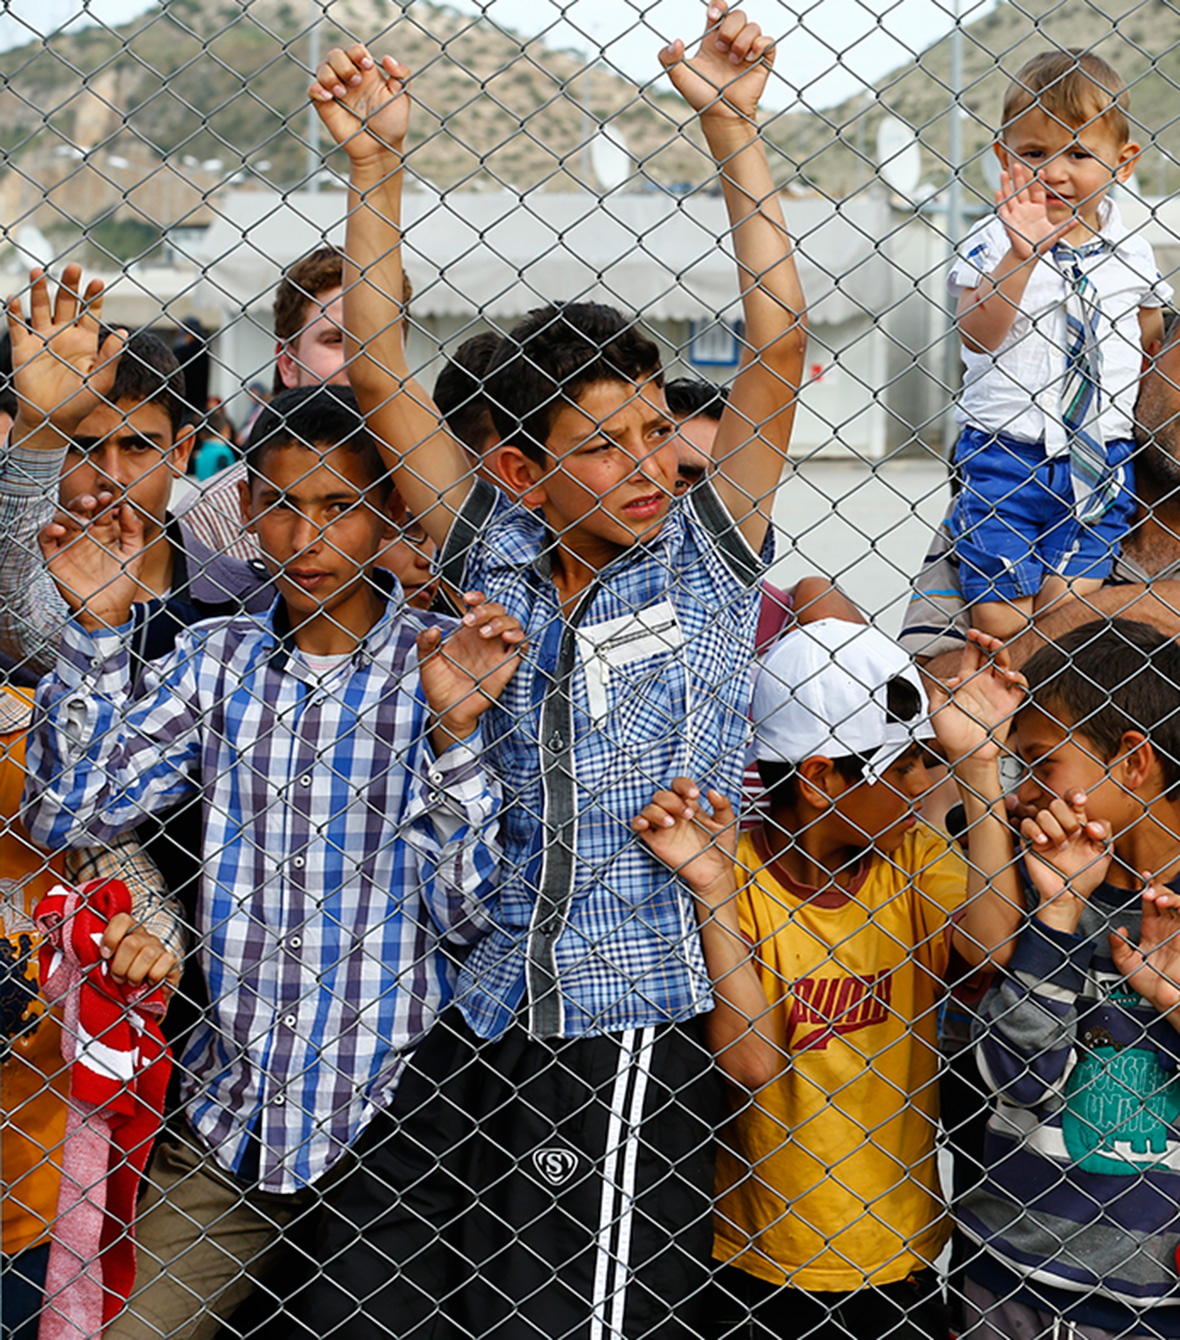 Refugee children